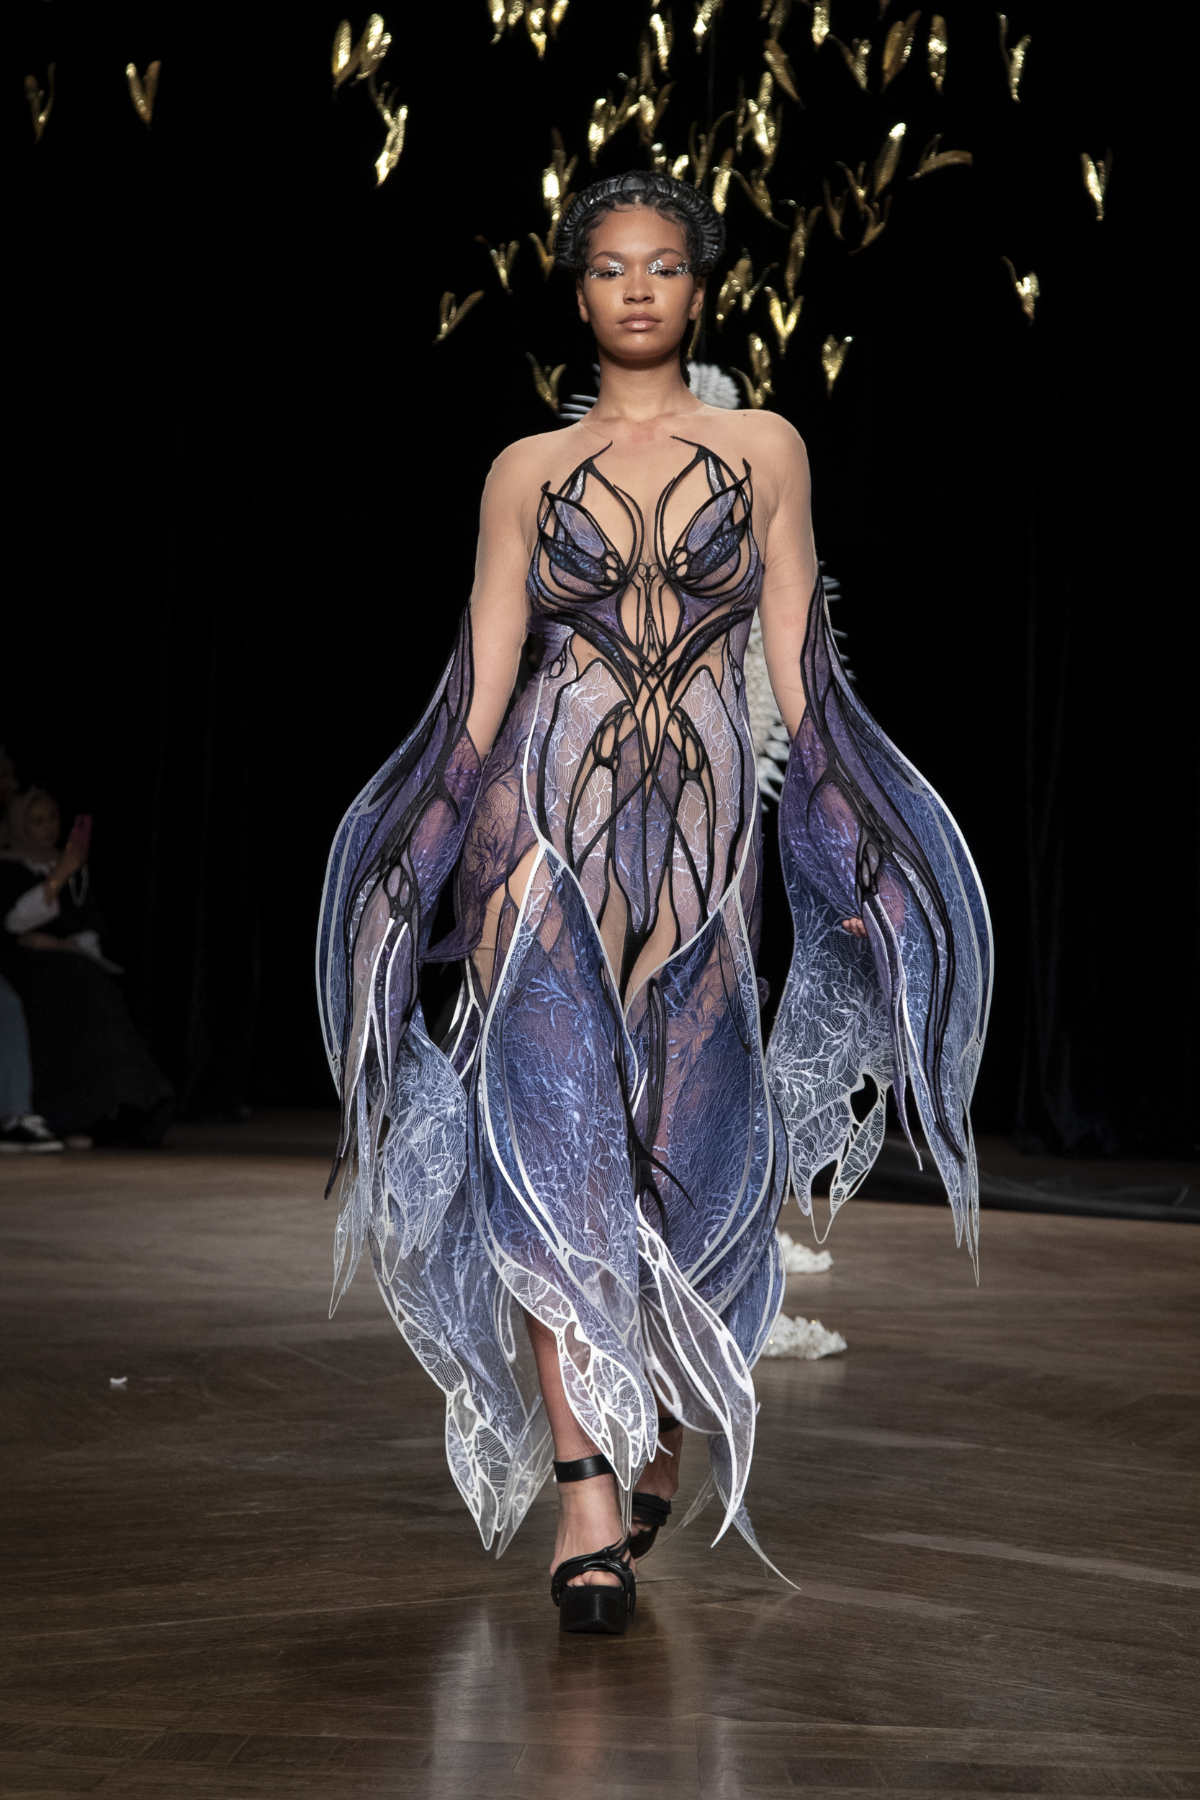 Iris Van Herpen Presents Its New Haute Couture Autumn Winter 2022 Collection: ‘Meta Morphism’